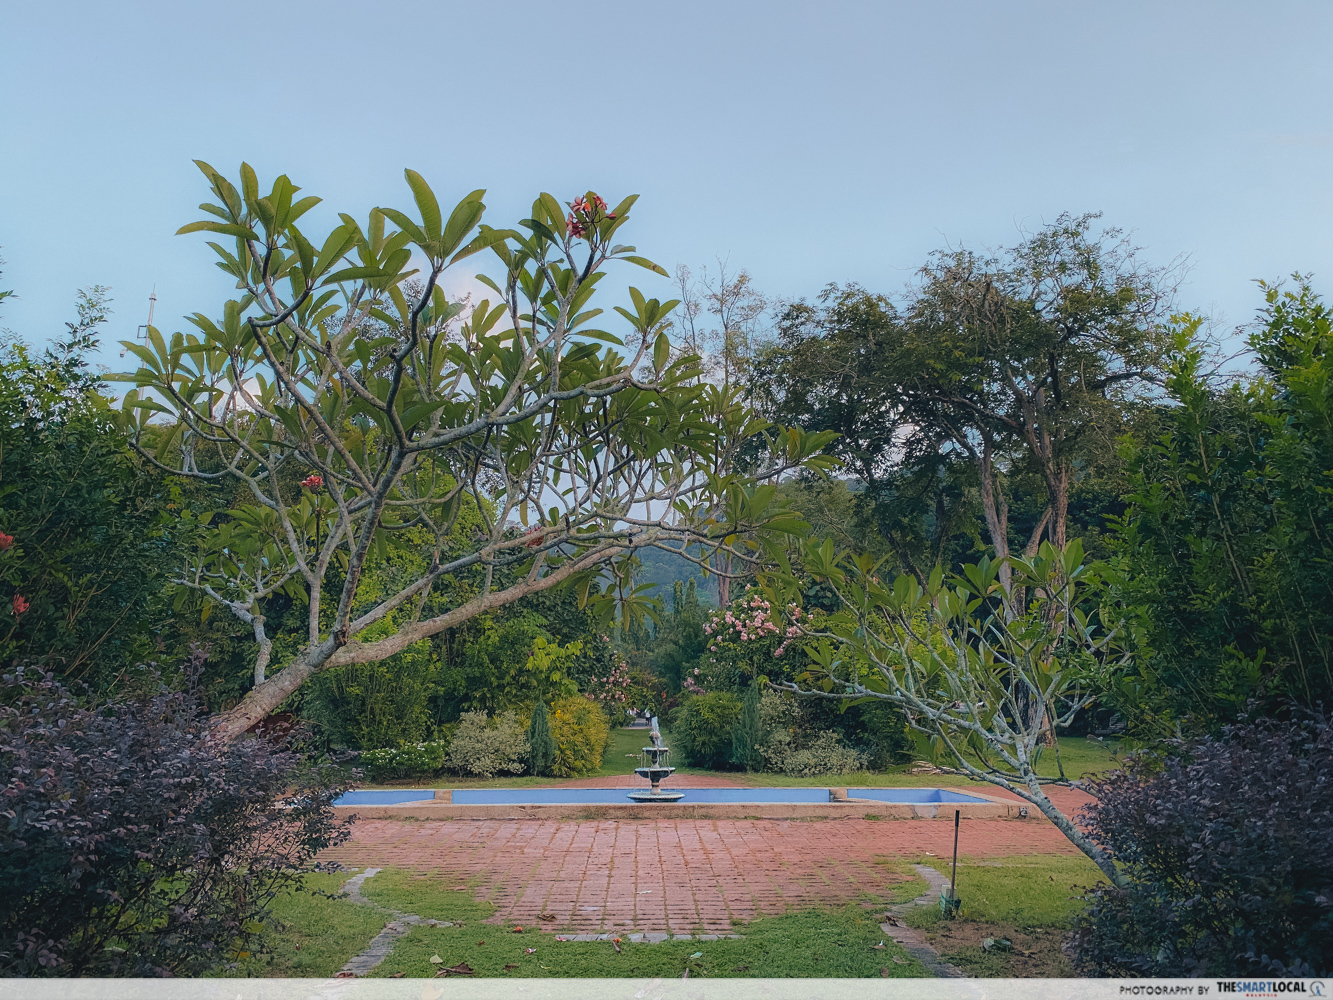 Penang Botanic Gardens - fountain formal garden